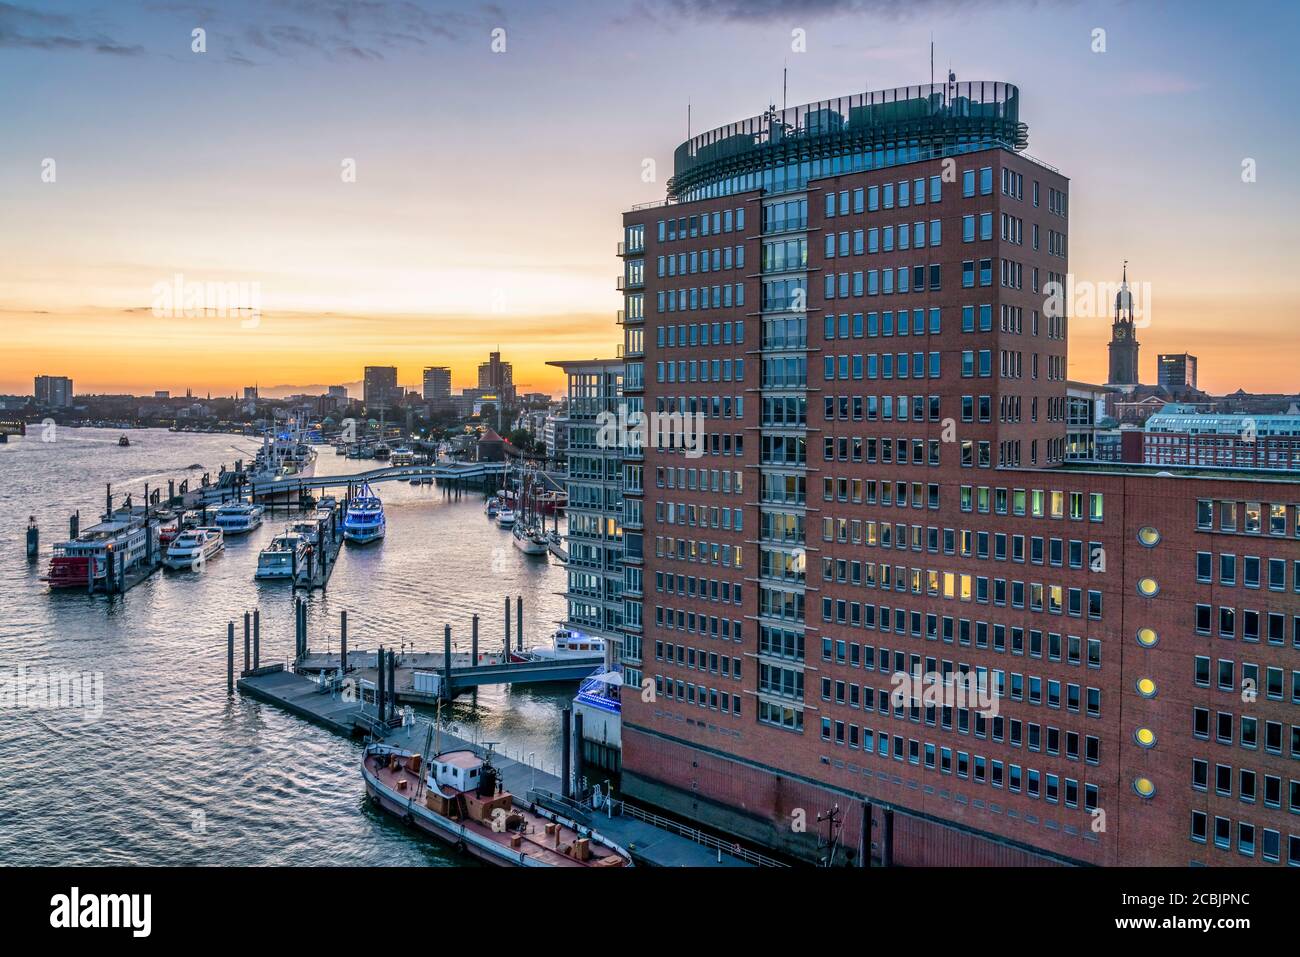 Ausblick von der Elbphilharmonie auf das Hanseatic Trade Center, Sandtorhafen, Speicherstadt, Hafencity, Hamburg, Deutschland, Europa Stock Photo